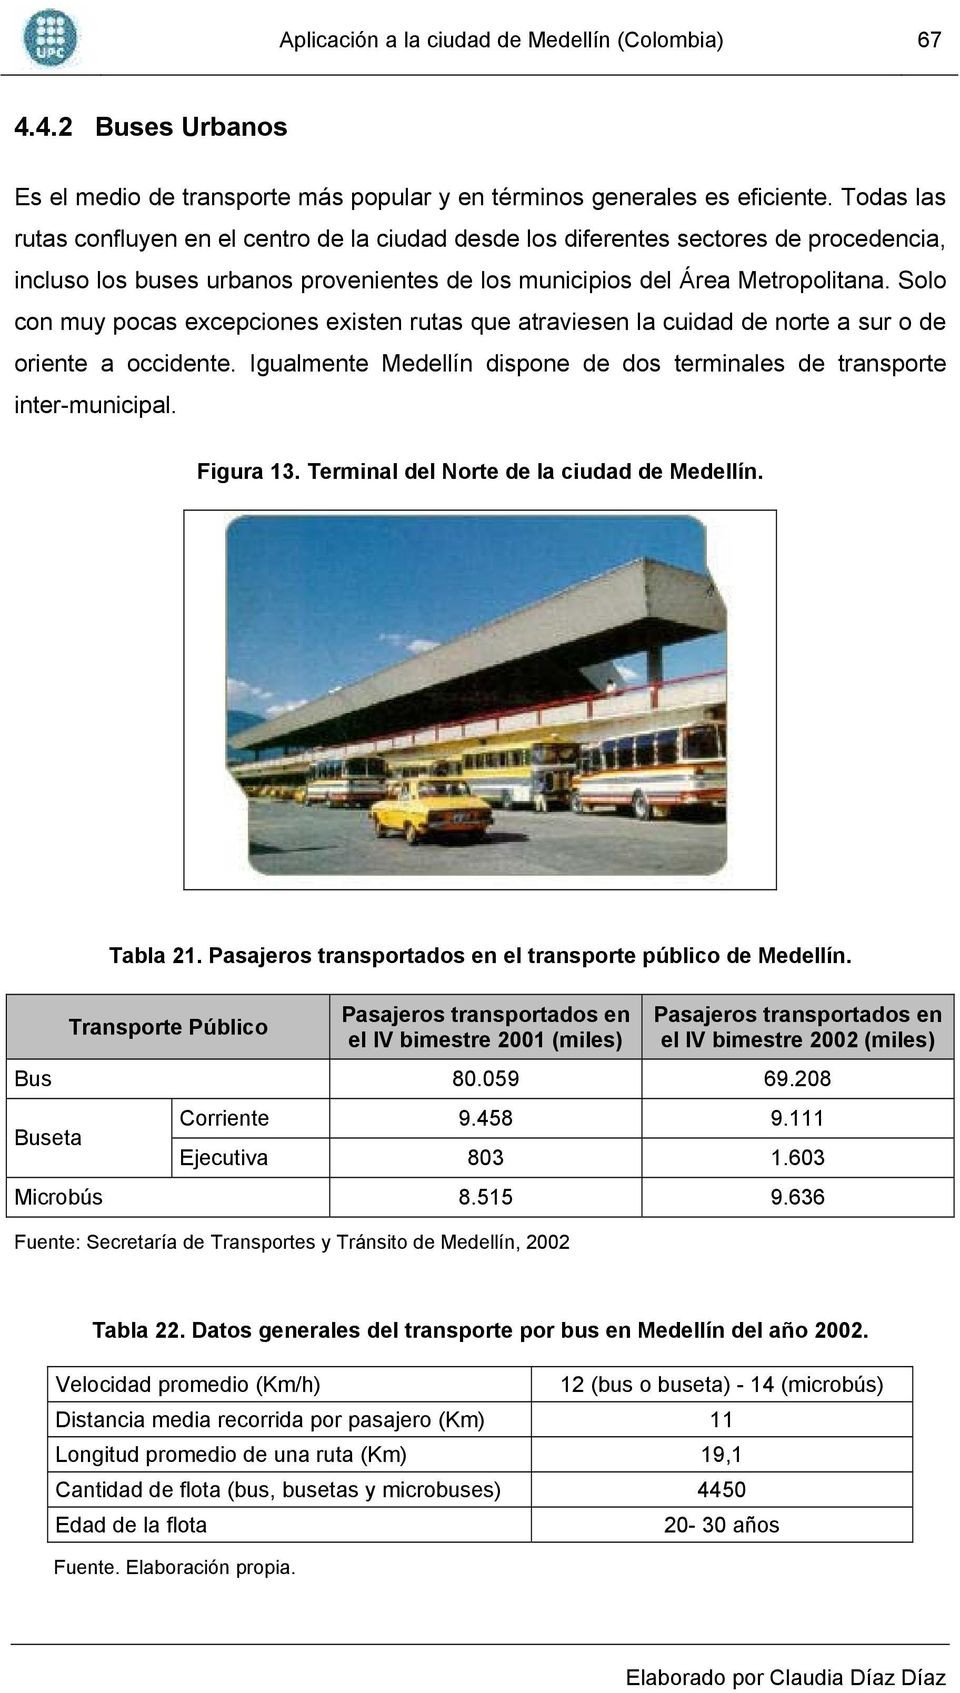 Solo con muy pocas excepciones existen rutas que atraviesen la cuidad de norte a sur o de oriente a occidente. Igualmente Medellín dispone de dos terminales de transporte inter-municipal. Figura 13.